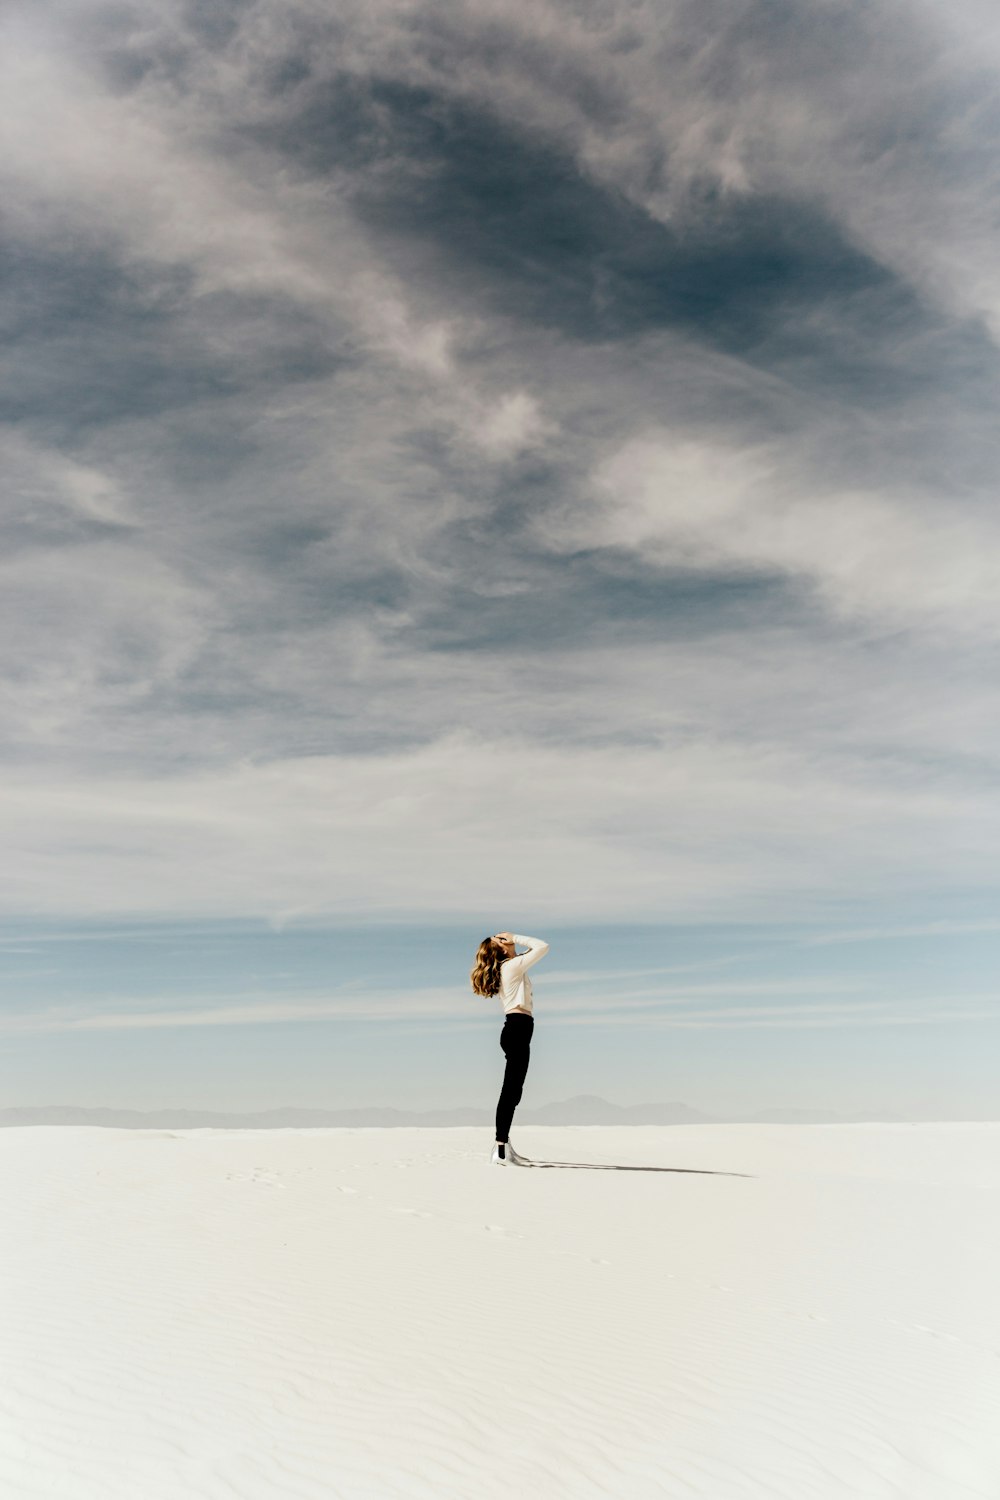 하얀 모래 위에 서서 하늘을 올려다 보는 여자